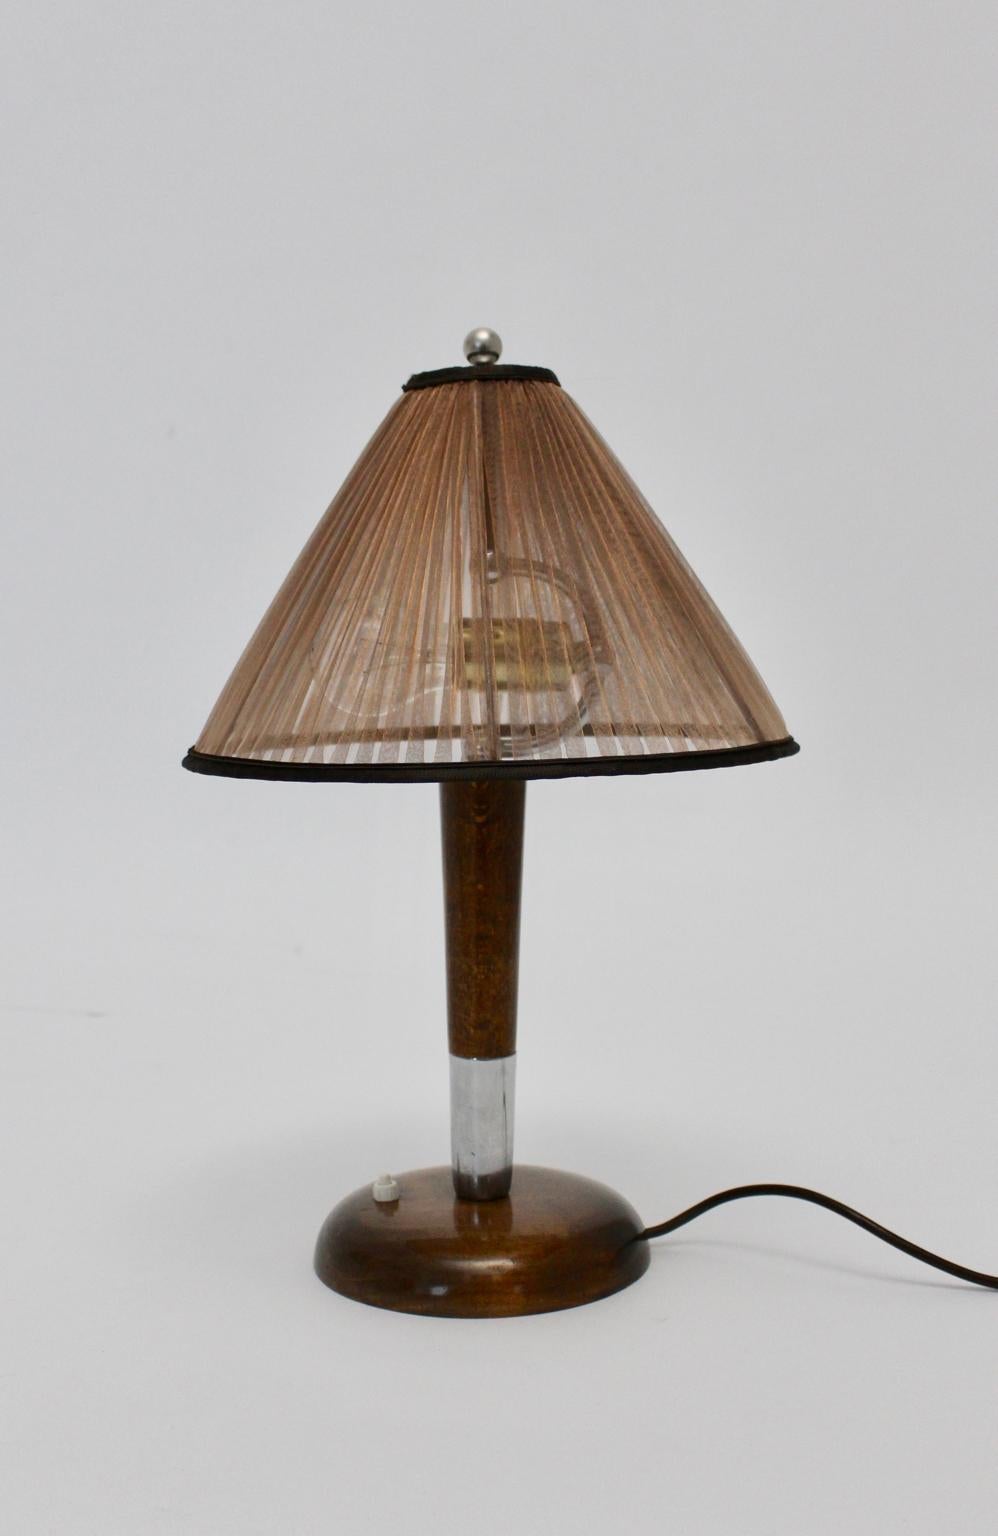 Art Deco Vintage Tischlampe aus Buche und Nickel 1930er Jahre Österreich.
Diese Tischlampe wurde um 1930 entworfen und hergestellt.
Auch der Stiel wurde aus massivem Buchenholz gefertigt, braun gebeizt, lackiert und vernickelt.
Der erneuerte